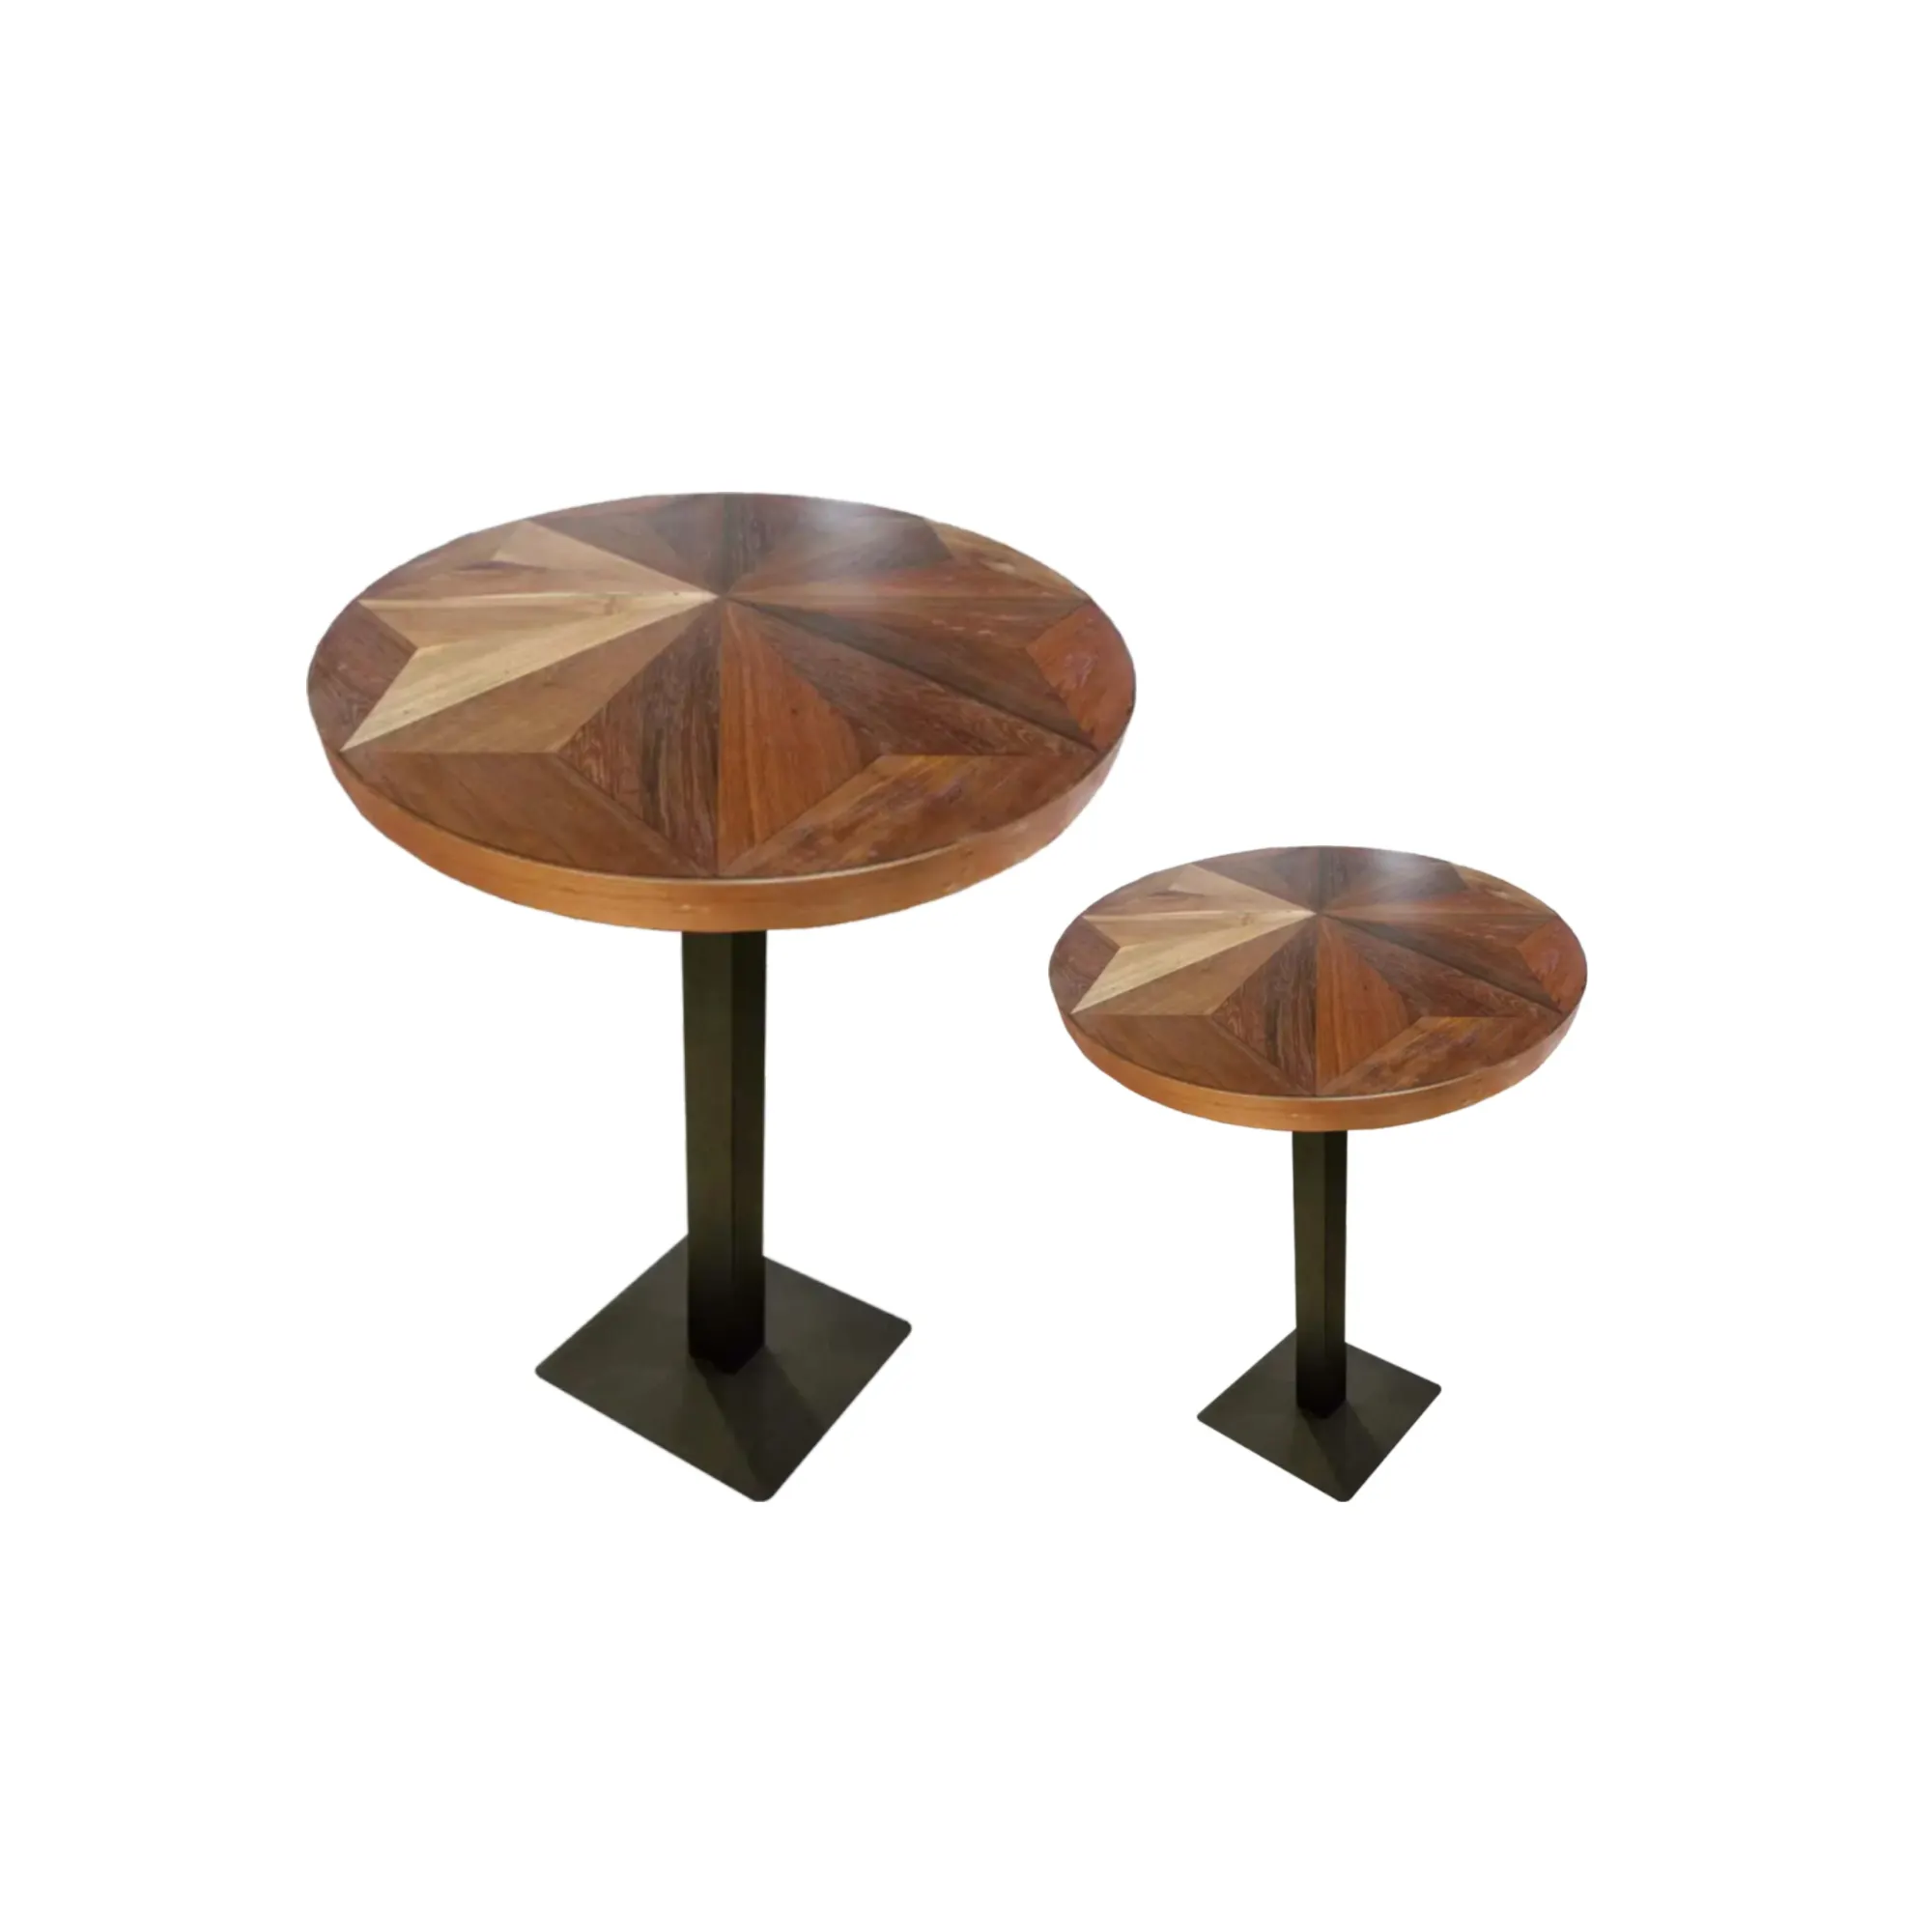 โต๊ะลามิเนตไม้สักตั้งโต๊ะแบบยึดได้สำหรับบ้านเฟอร์นิเจอร์รีไซเคิลดีไซน์ทันสมัย